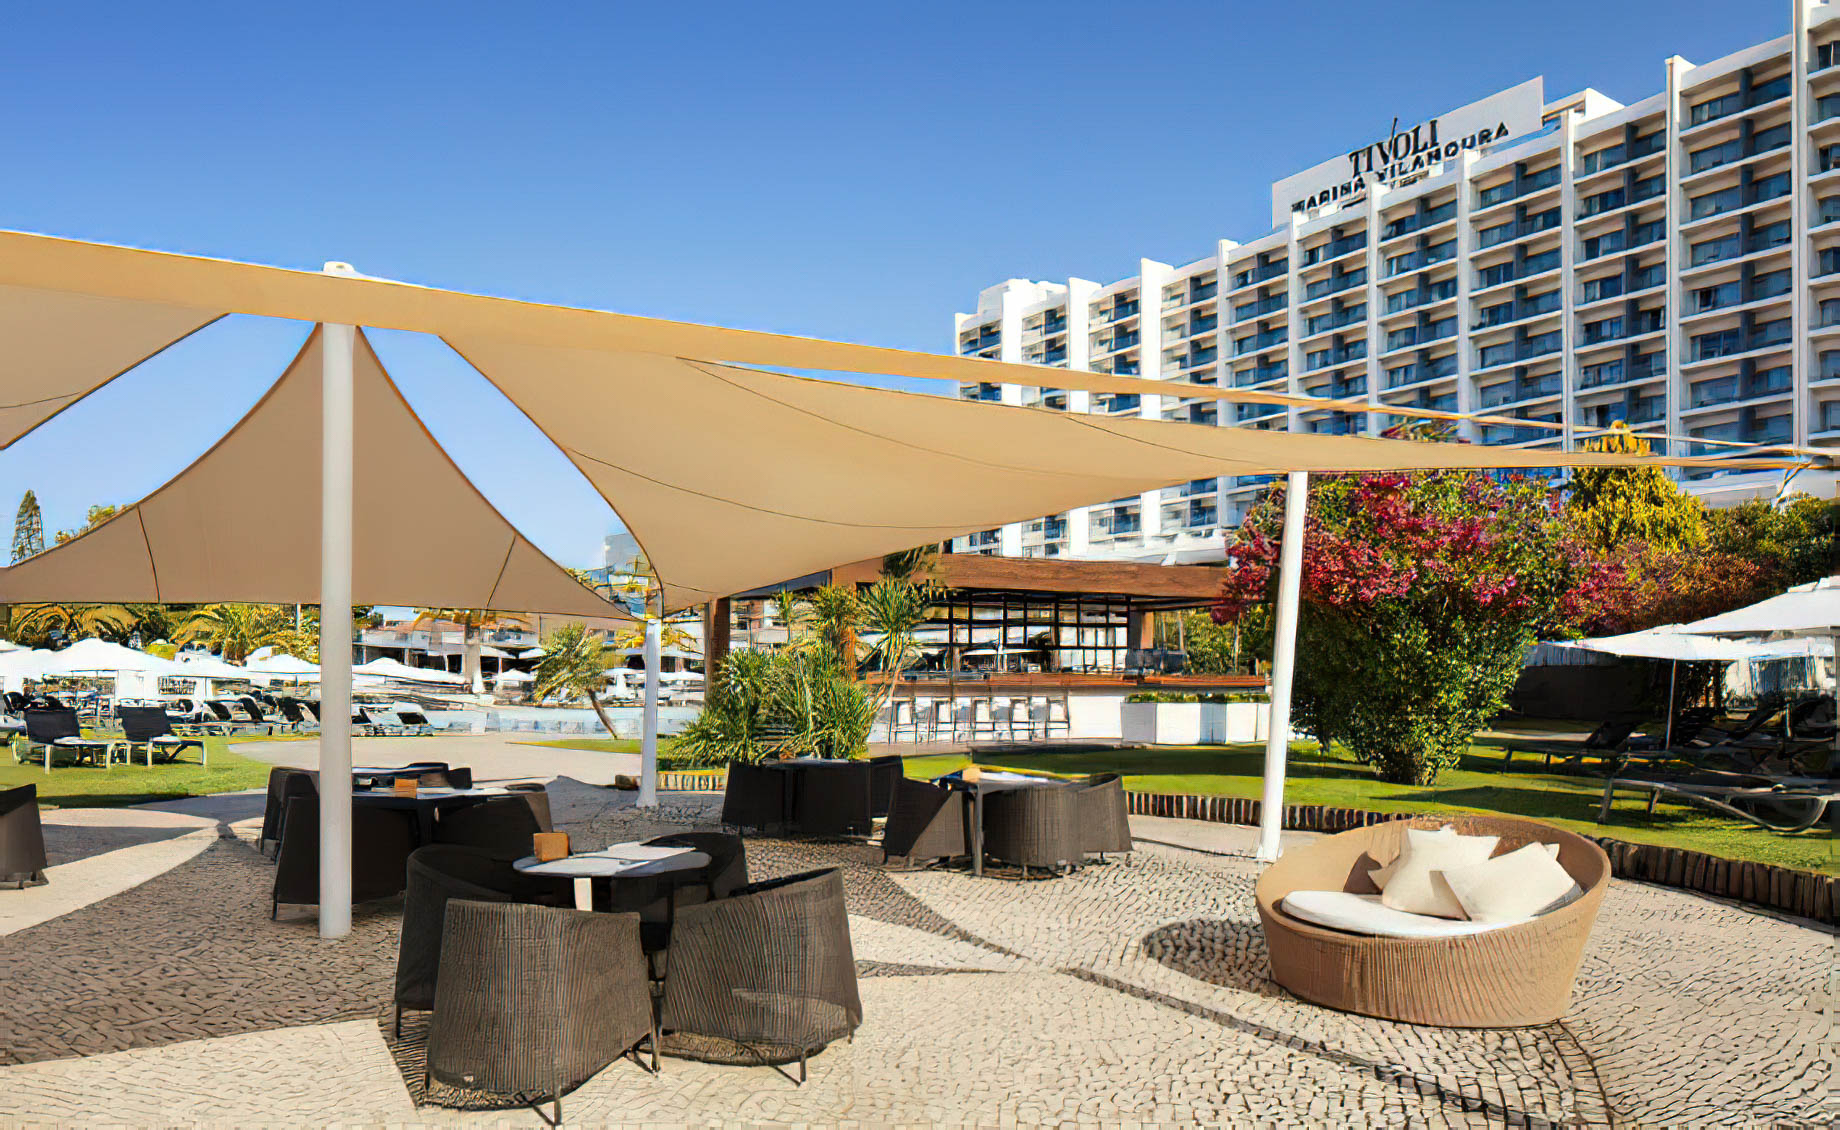 Tivoli Marina Vilamoura Algarve Resort - Portugal - DAzur Pool Bar